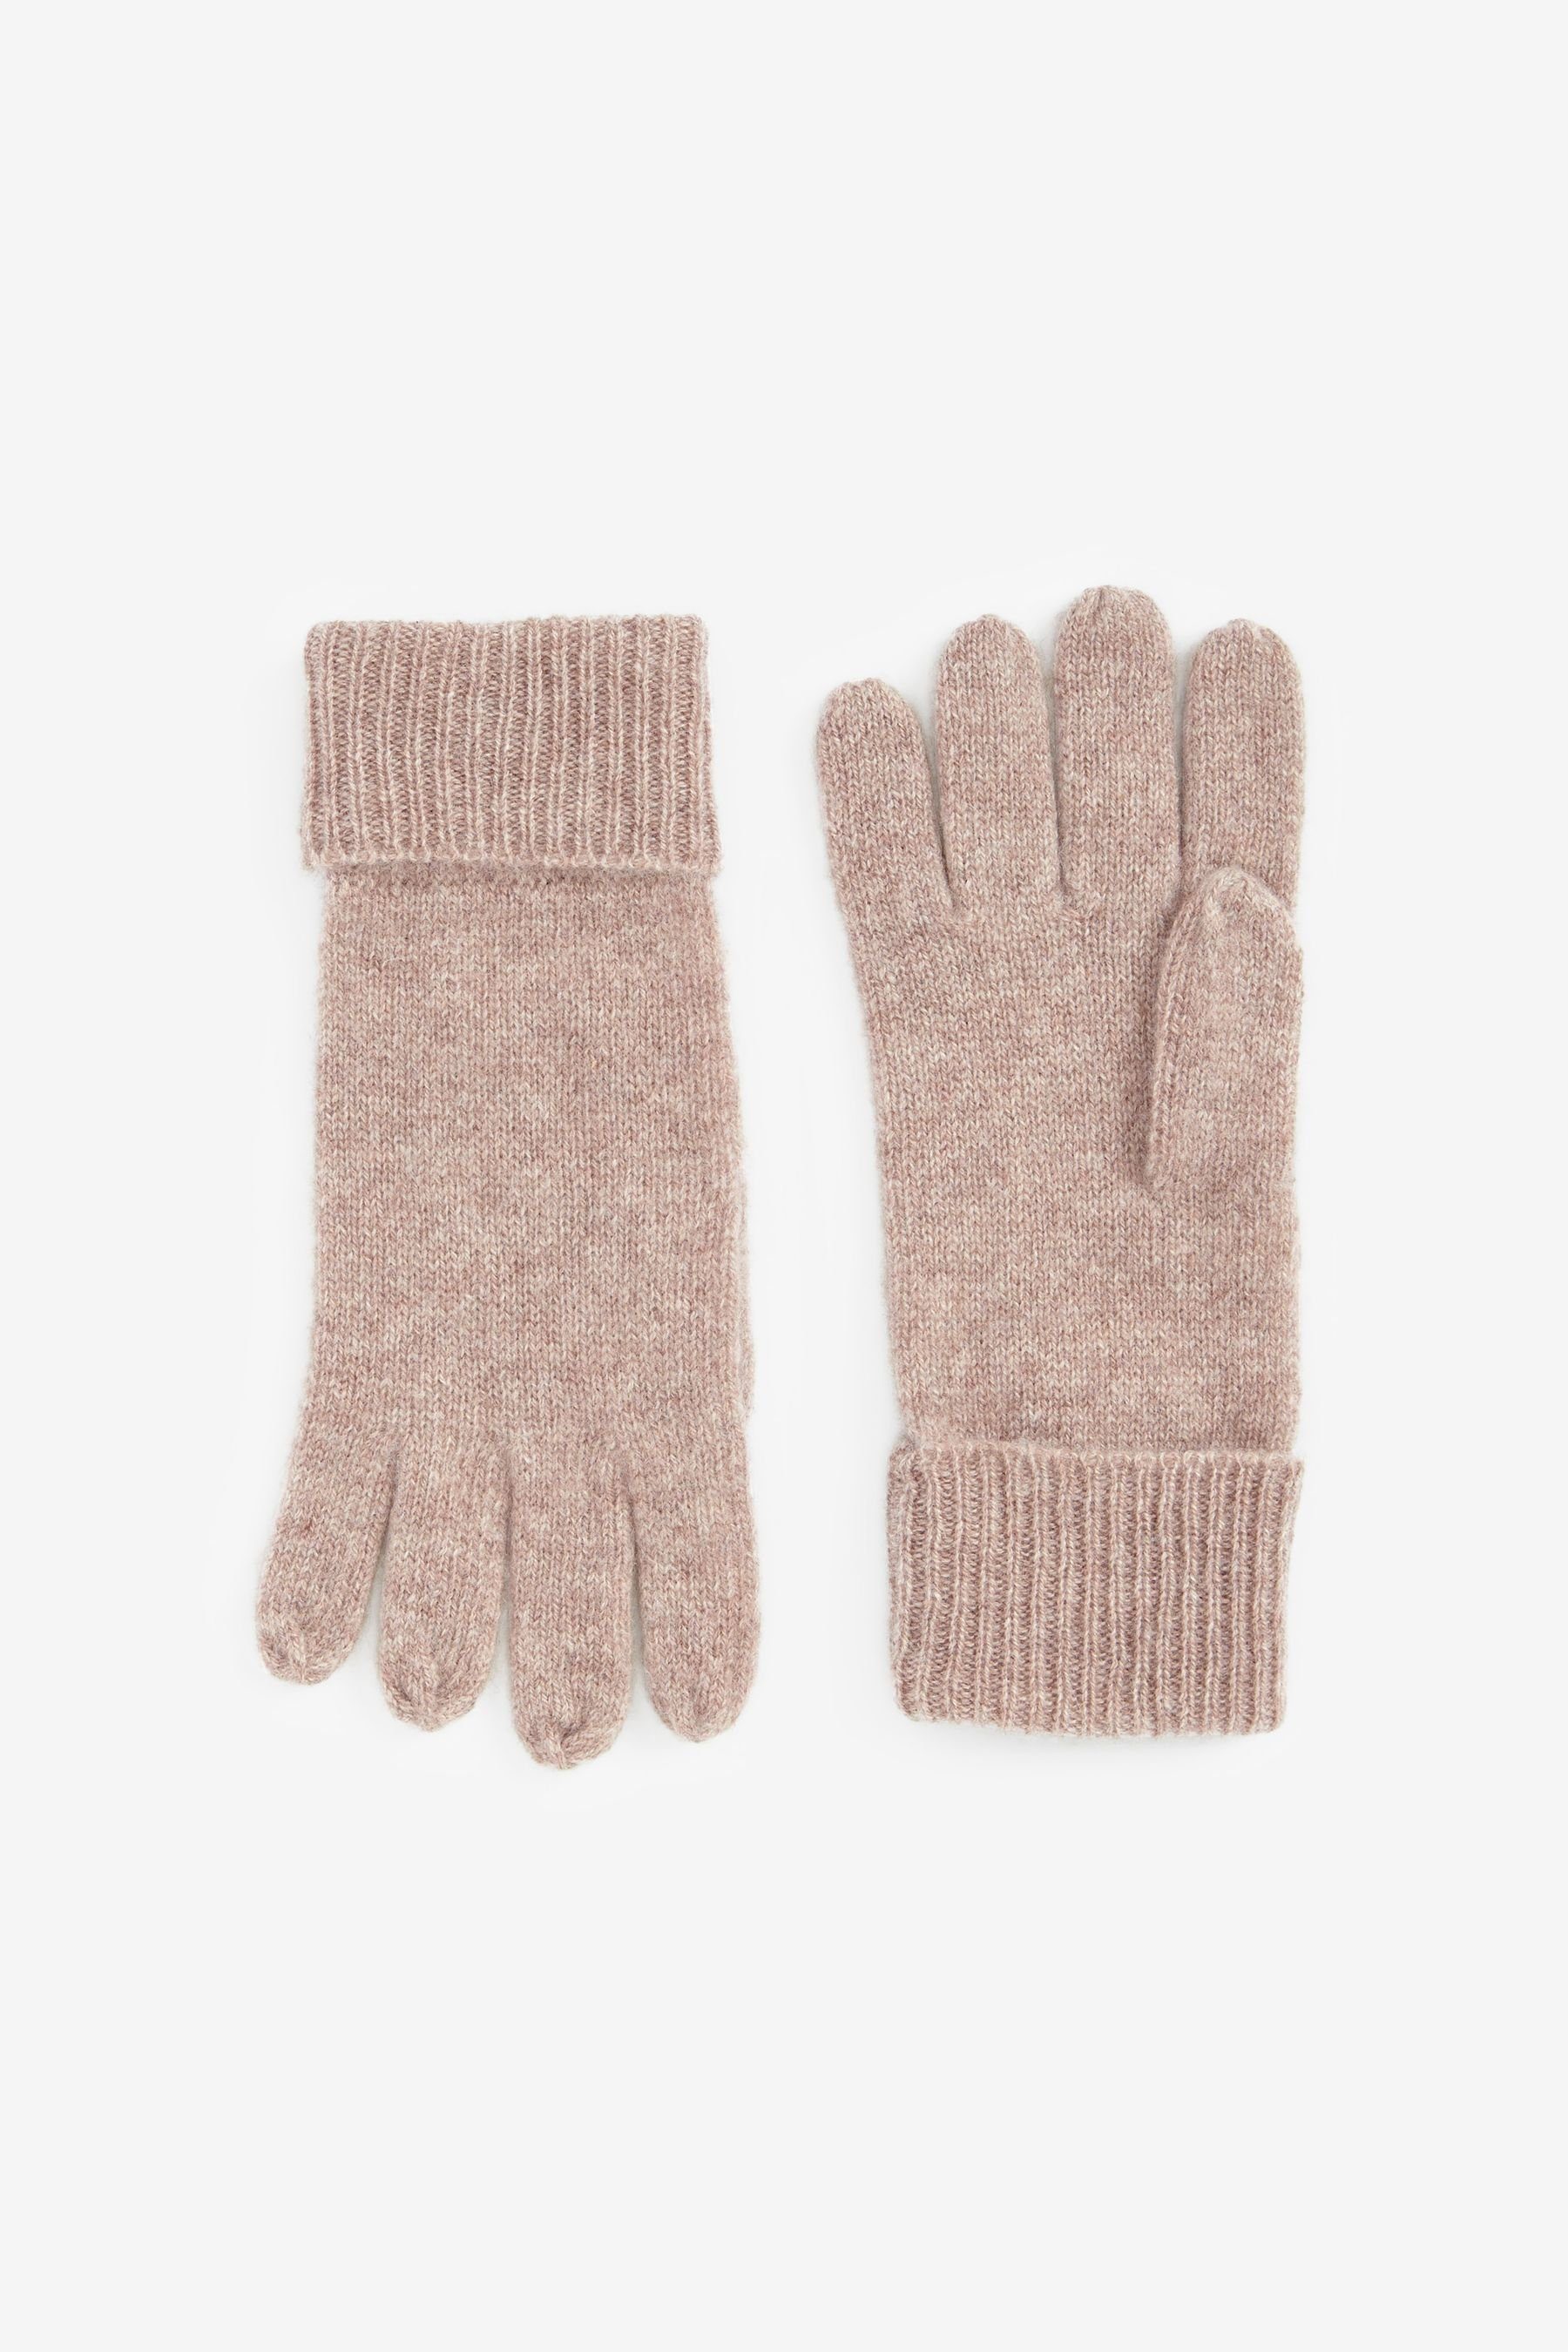 Next Strickhandschuhe Collection Luxe Handschuhe aus 100 % Kaschmir Oatmeal | Strickhandschuhe